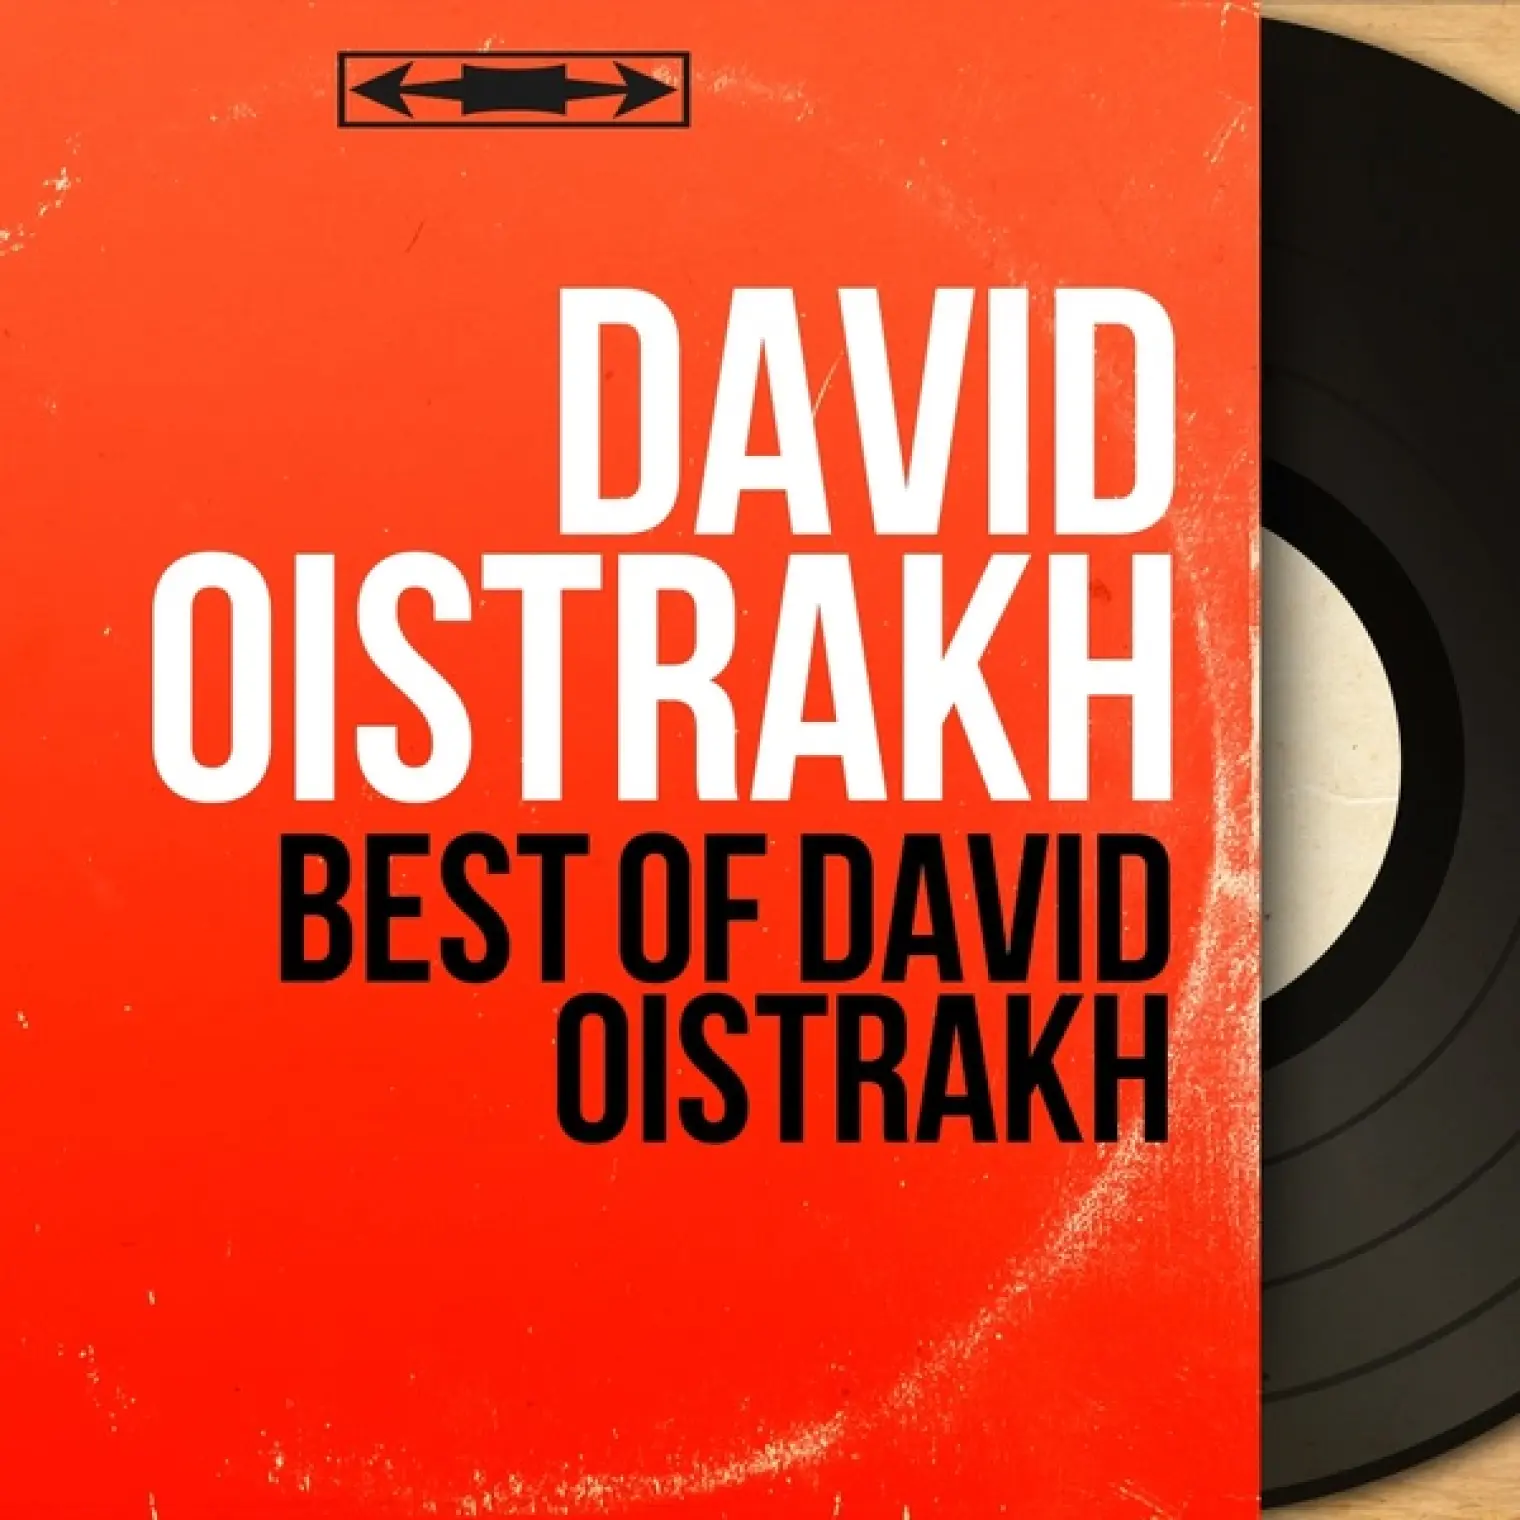 Best of David Oistrakh -  David Oistrakh 